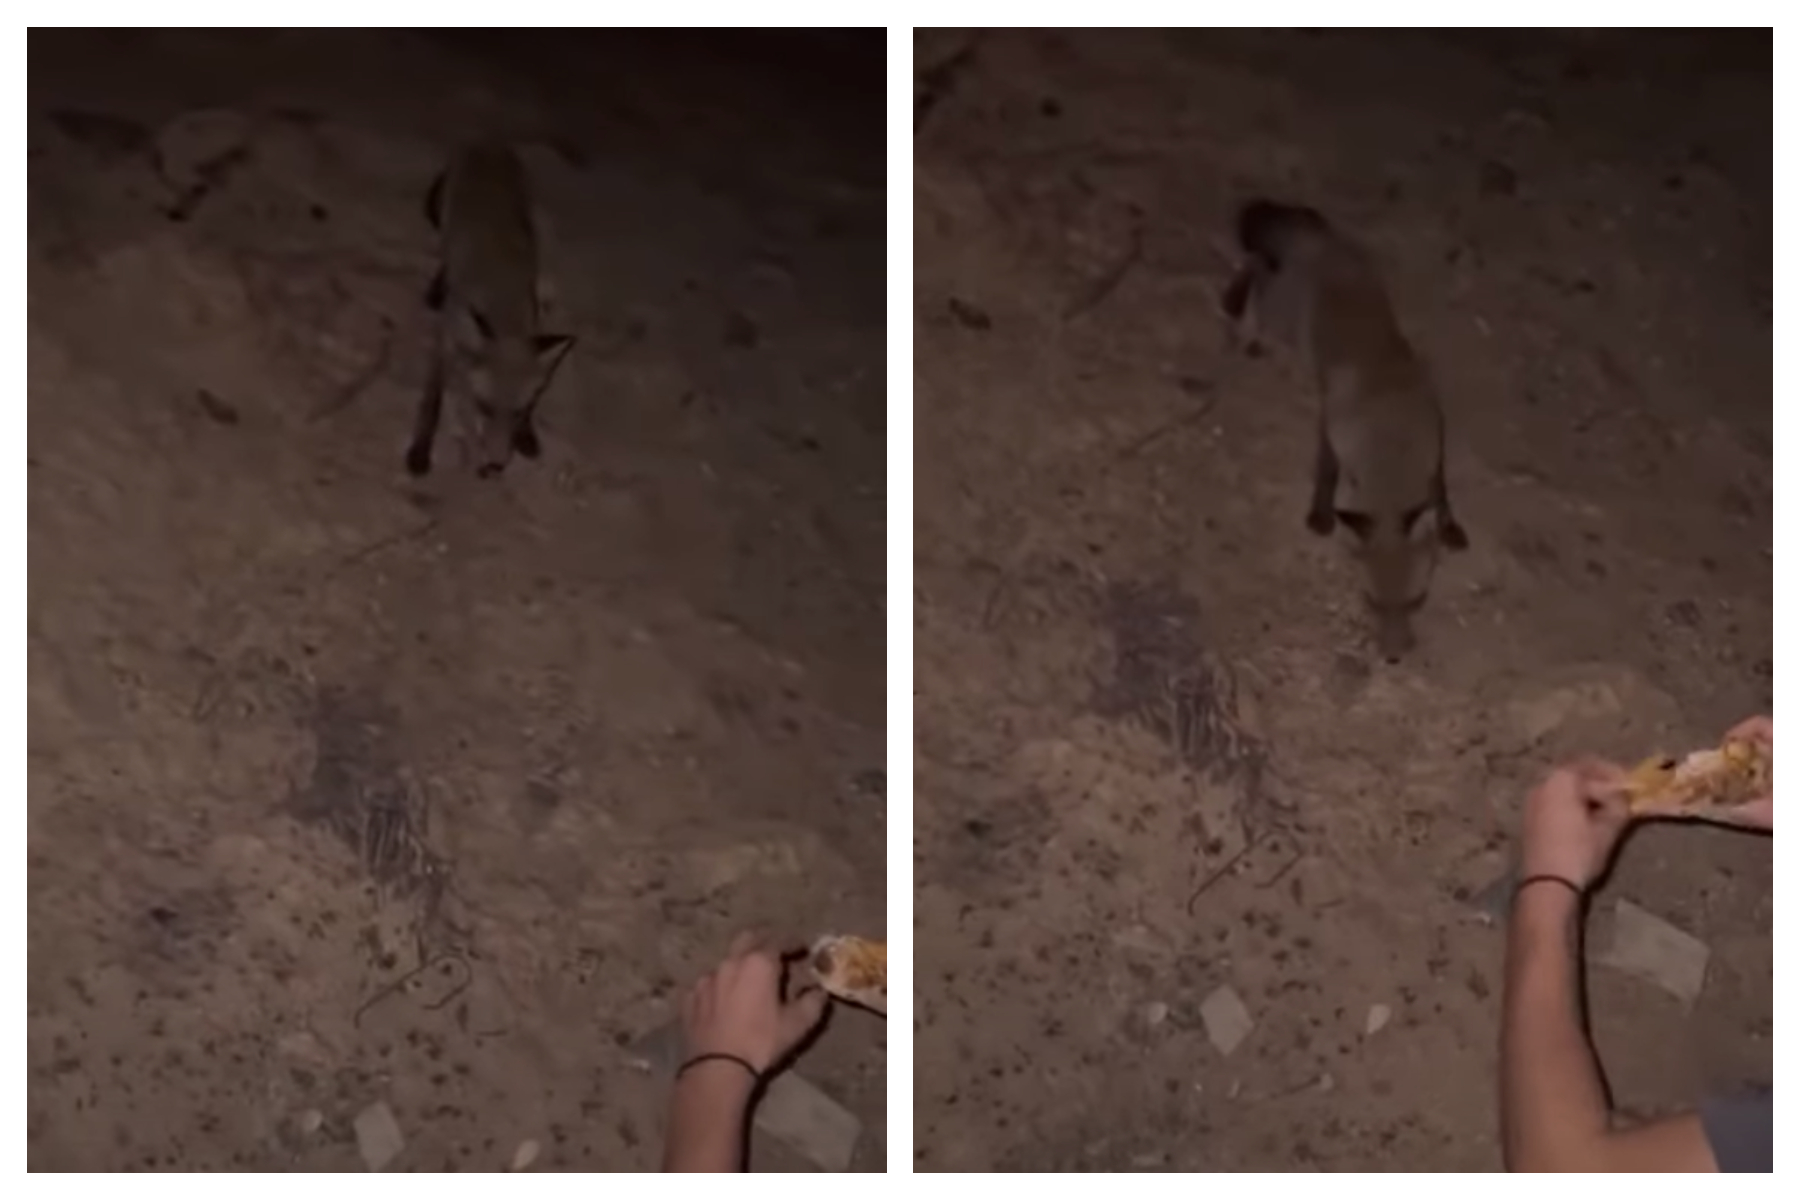 Έβρος: Κάτοικος εντόπισε αλεπού σε καμένη περιοχή και της έδωσε τροφή